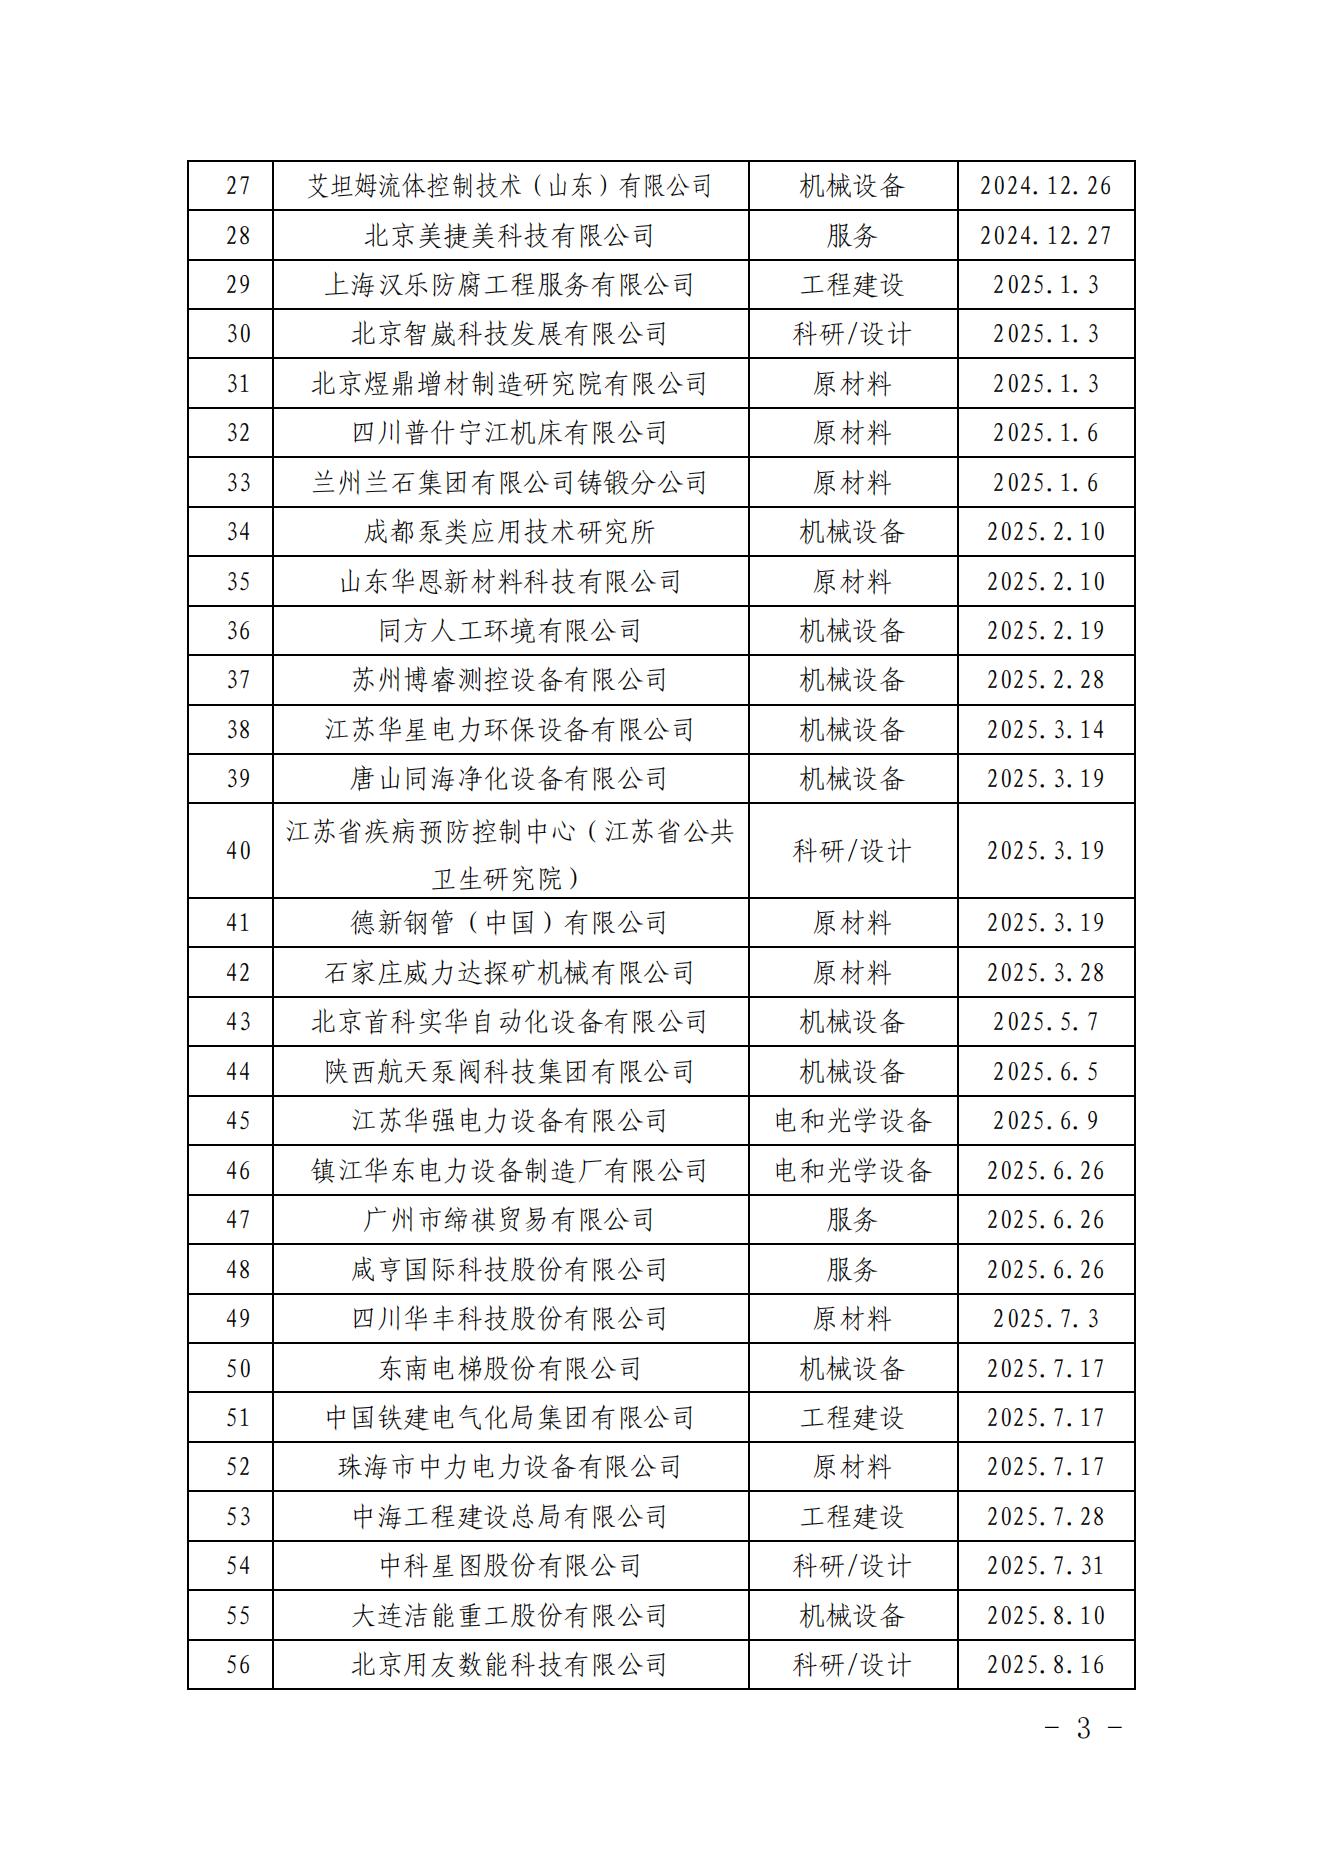 中国核能行业协会关于发布第三十二批核能行业合格供应商名录的公告_02.jpg